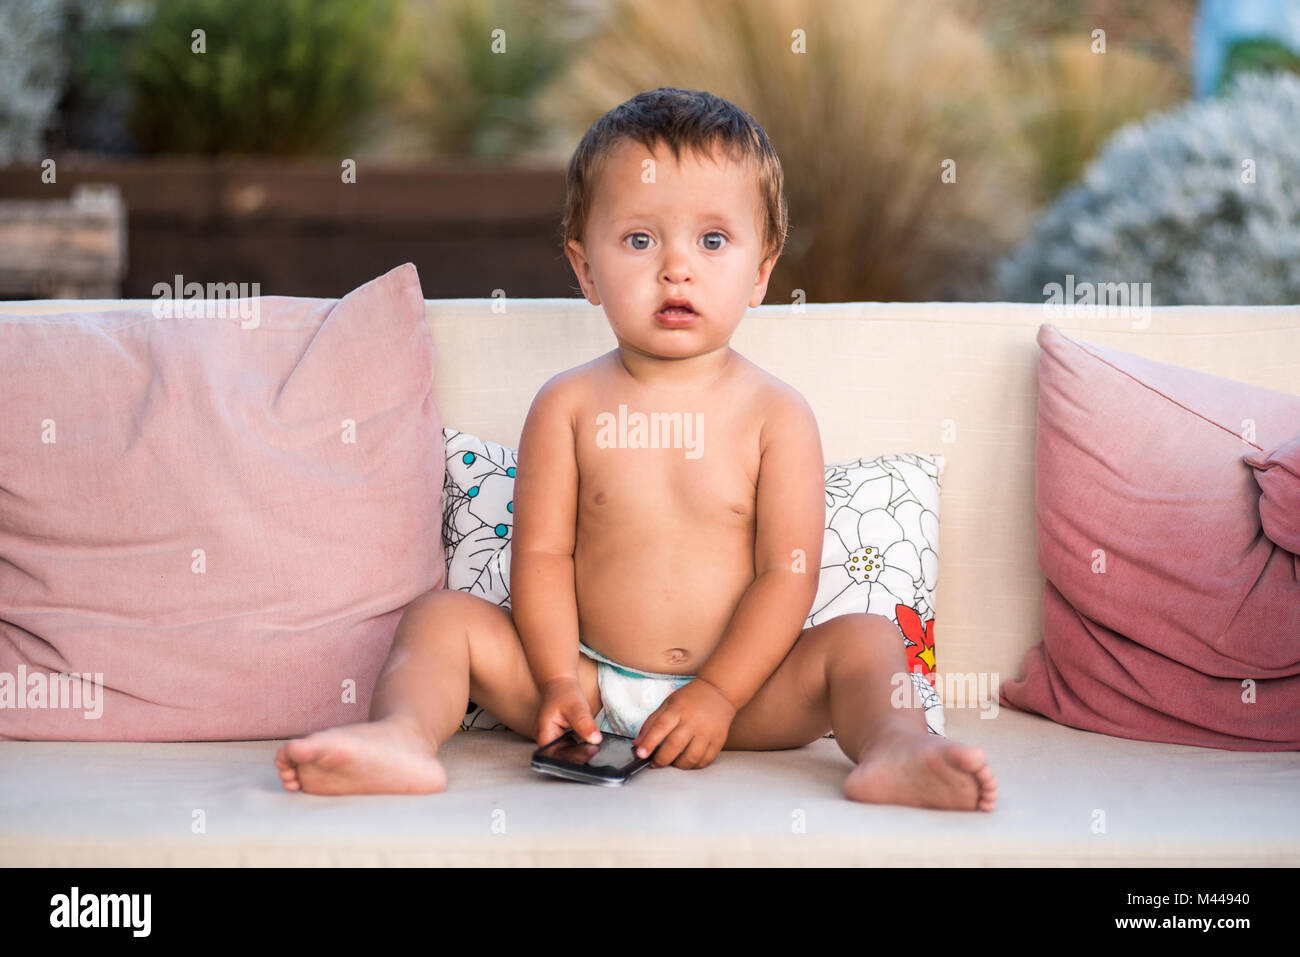 Baby Boy holding mirando a la cámara del smartphone Foto de stock